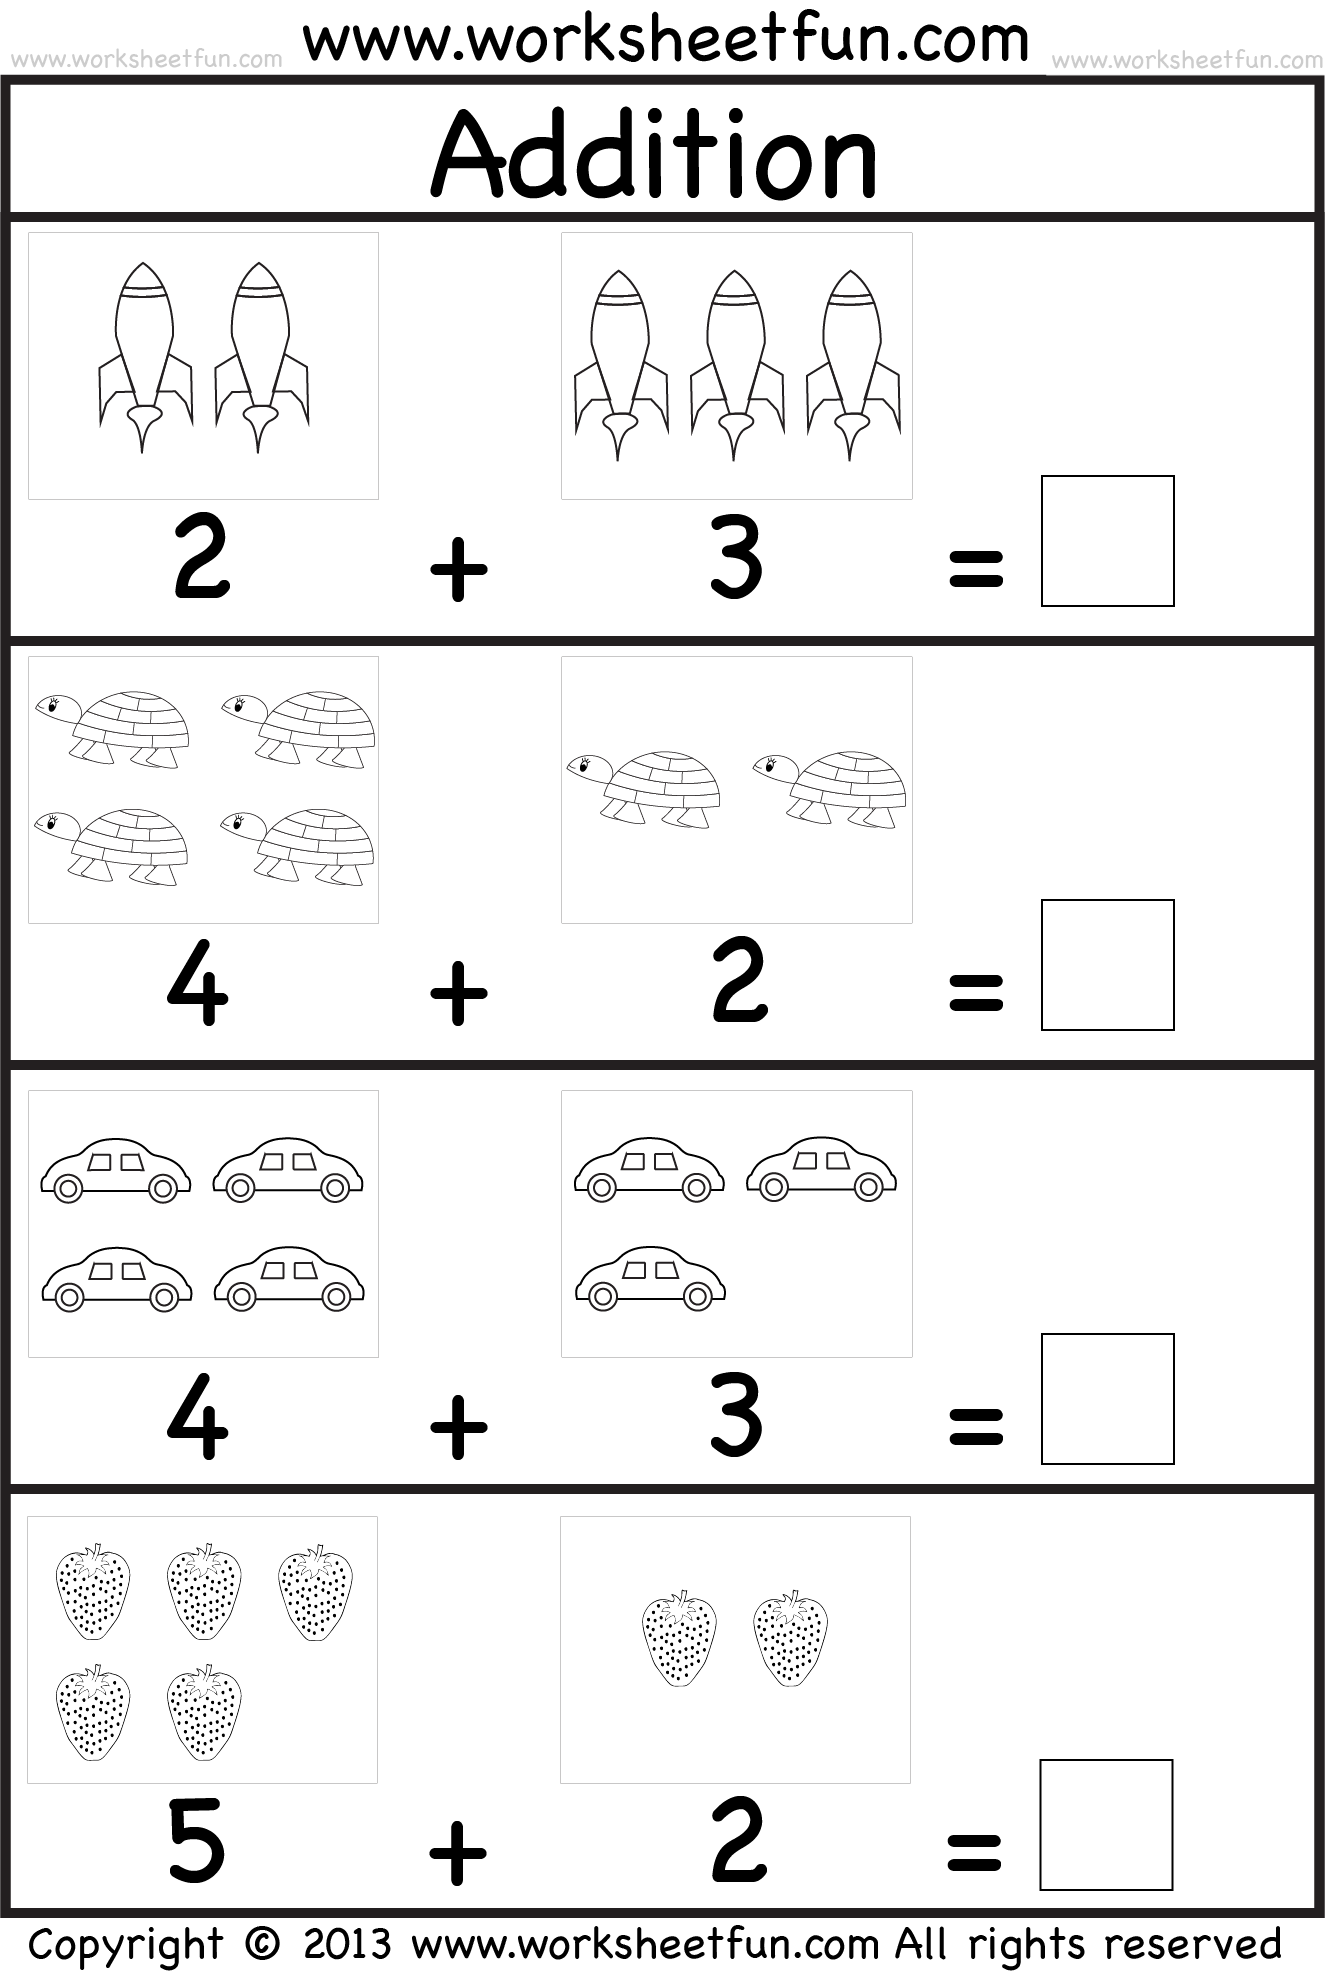 addition-worksheet-kindergarten-pdf-math-worksheets-printable-20